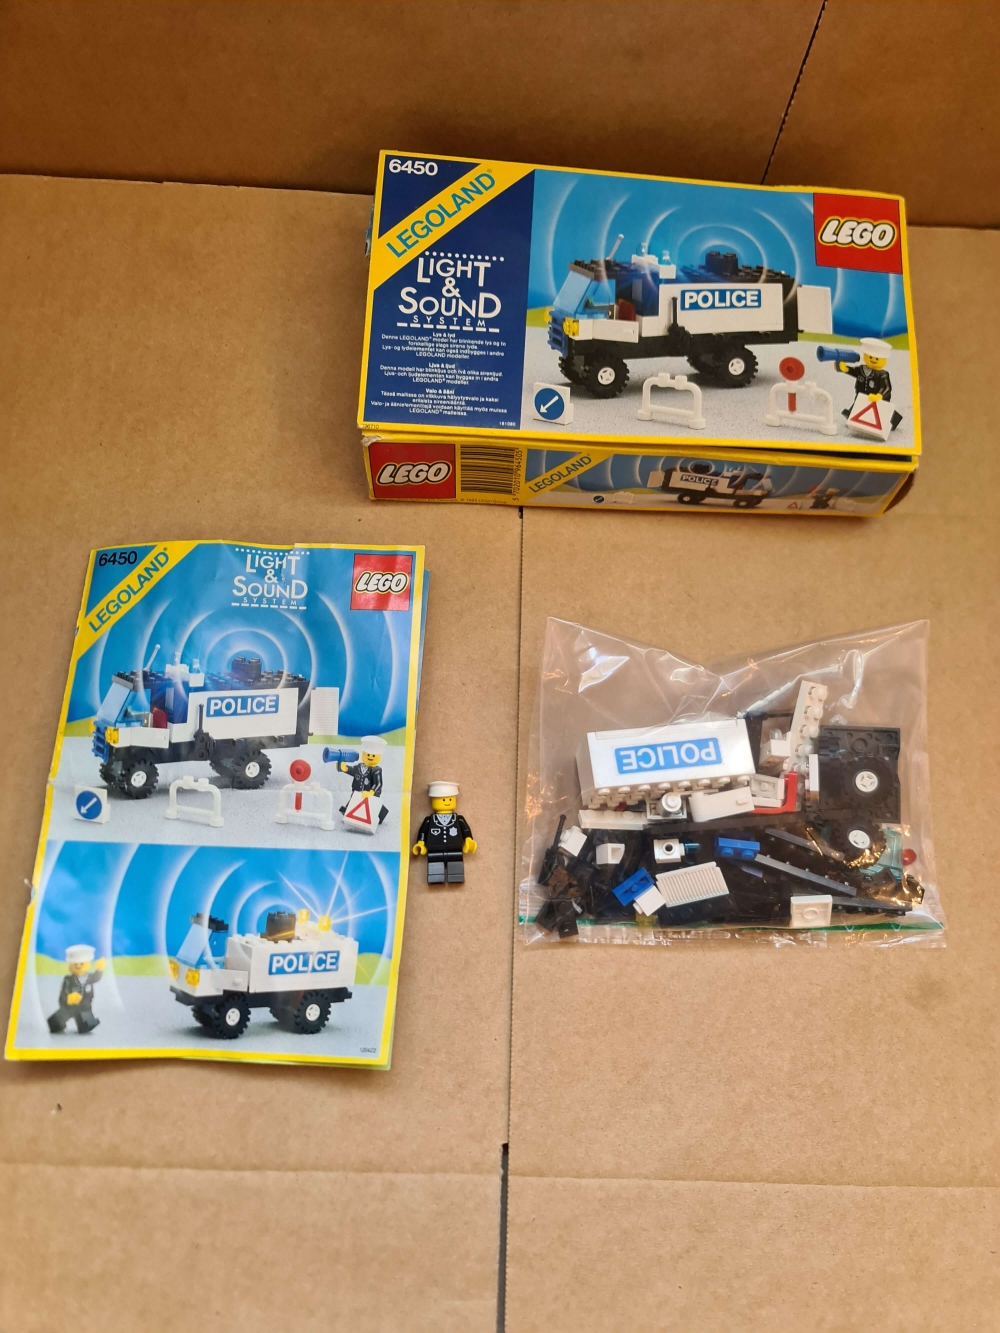 Sett 6450 fra Lego Classic Town : Sound & Light serien.
Komplett og flott sett med manual og dårlig eske.